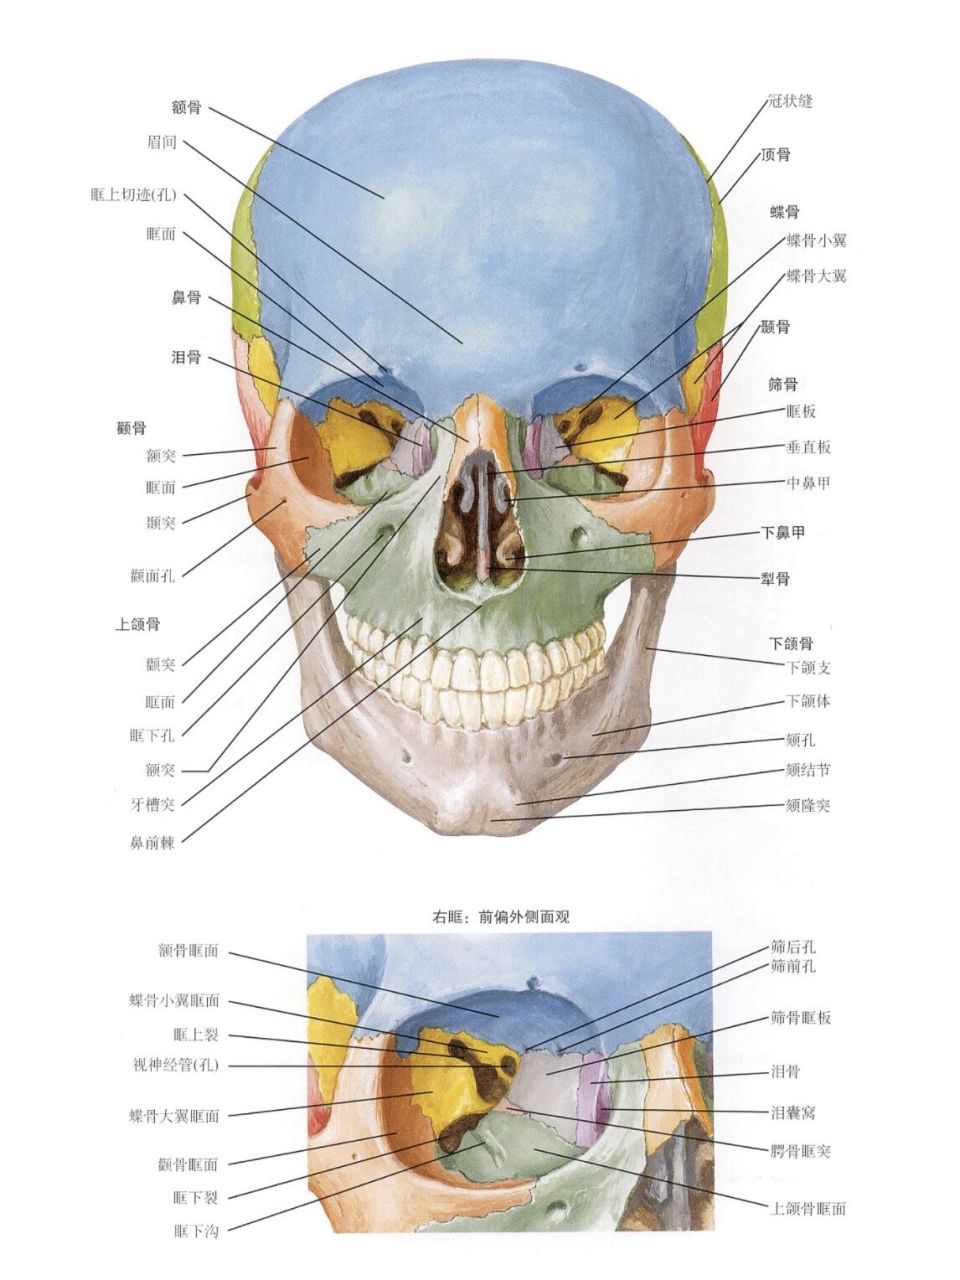 面部骨骼解剖图解大全图片